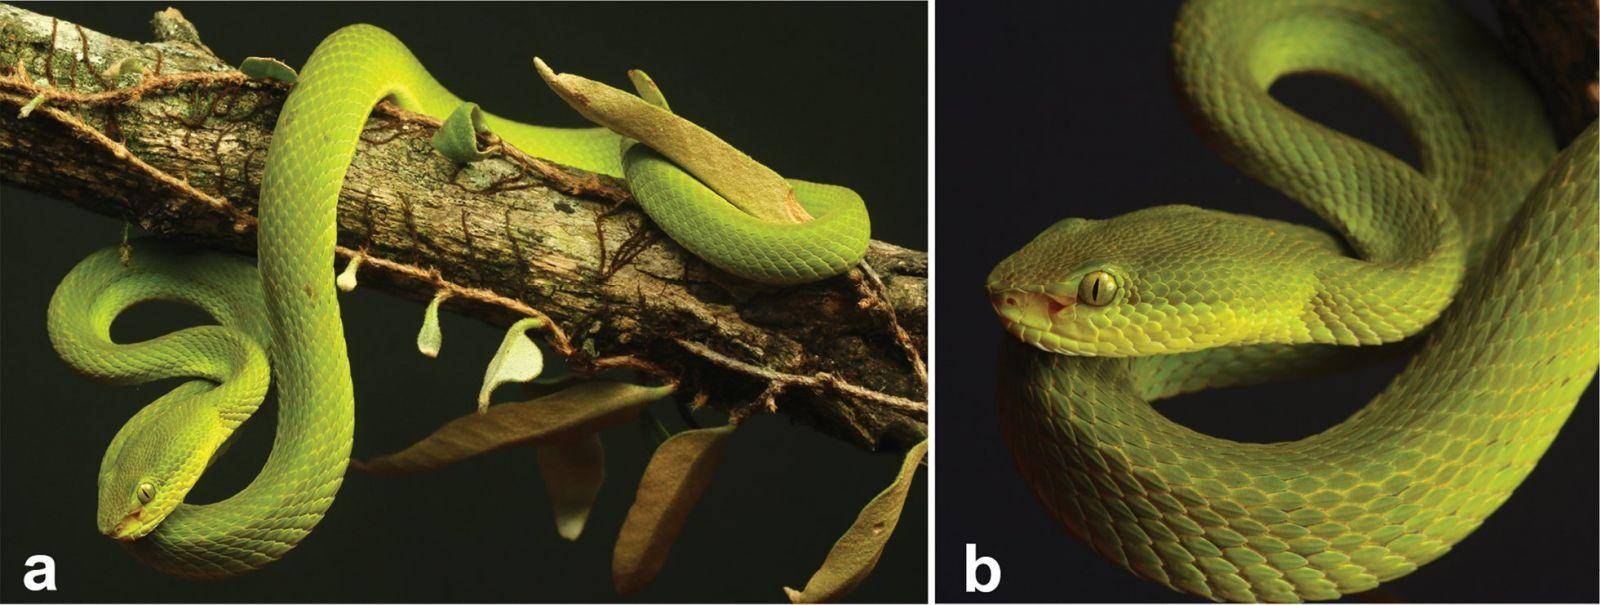 Científicos nombran nueva especie de serpiente en honor a Salazar Slytherin 2